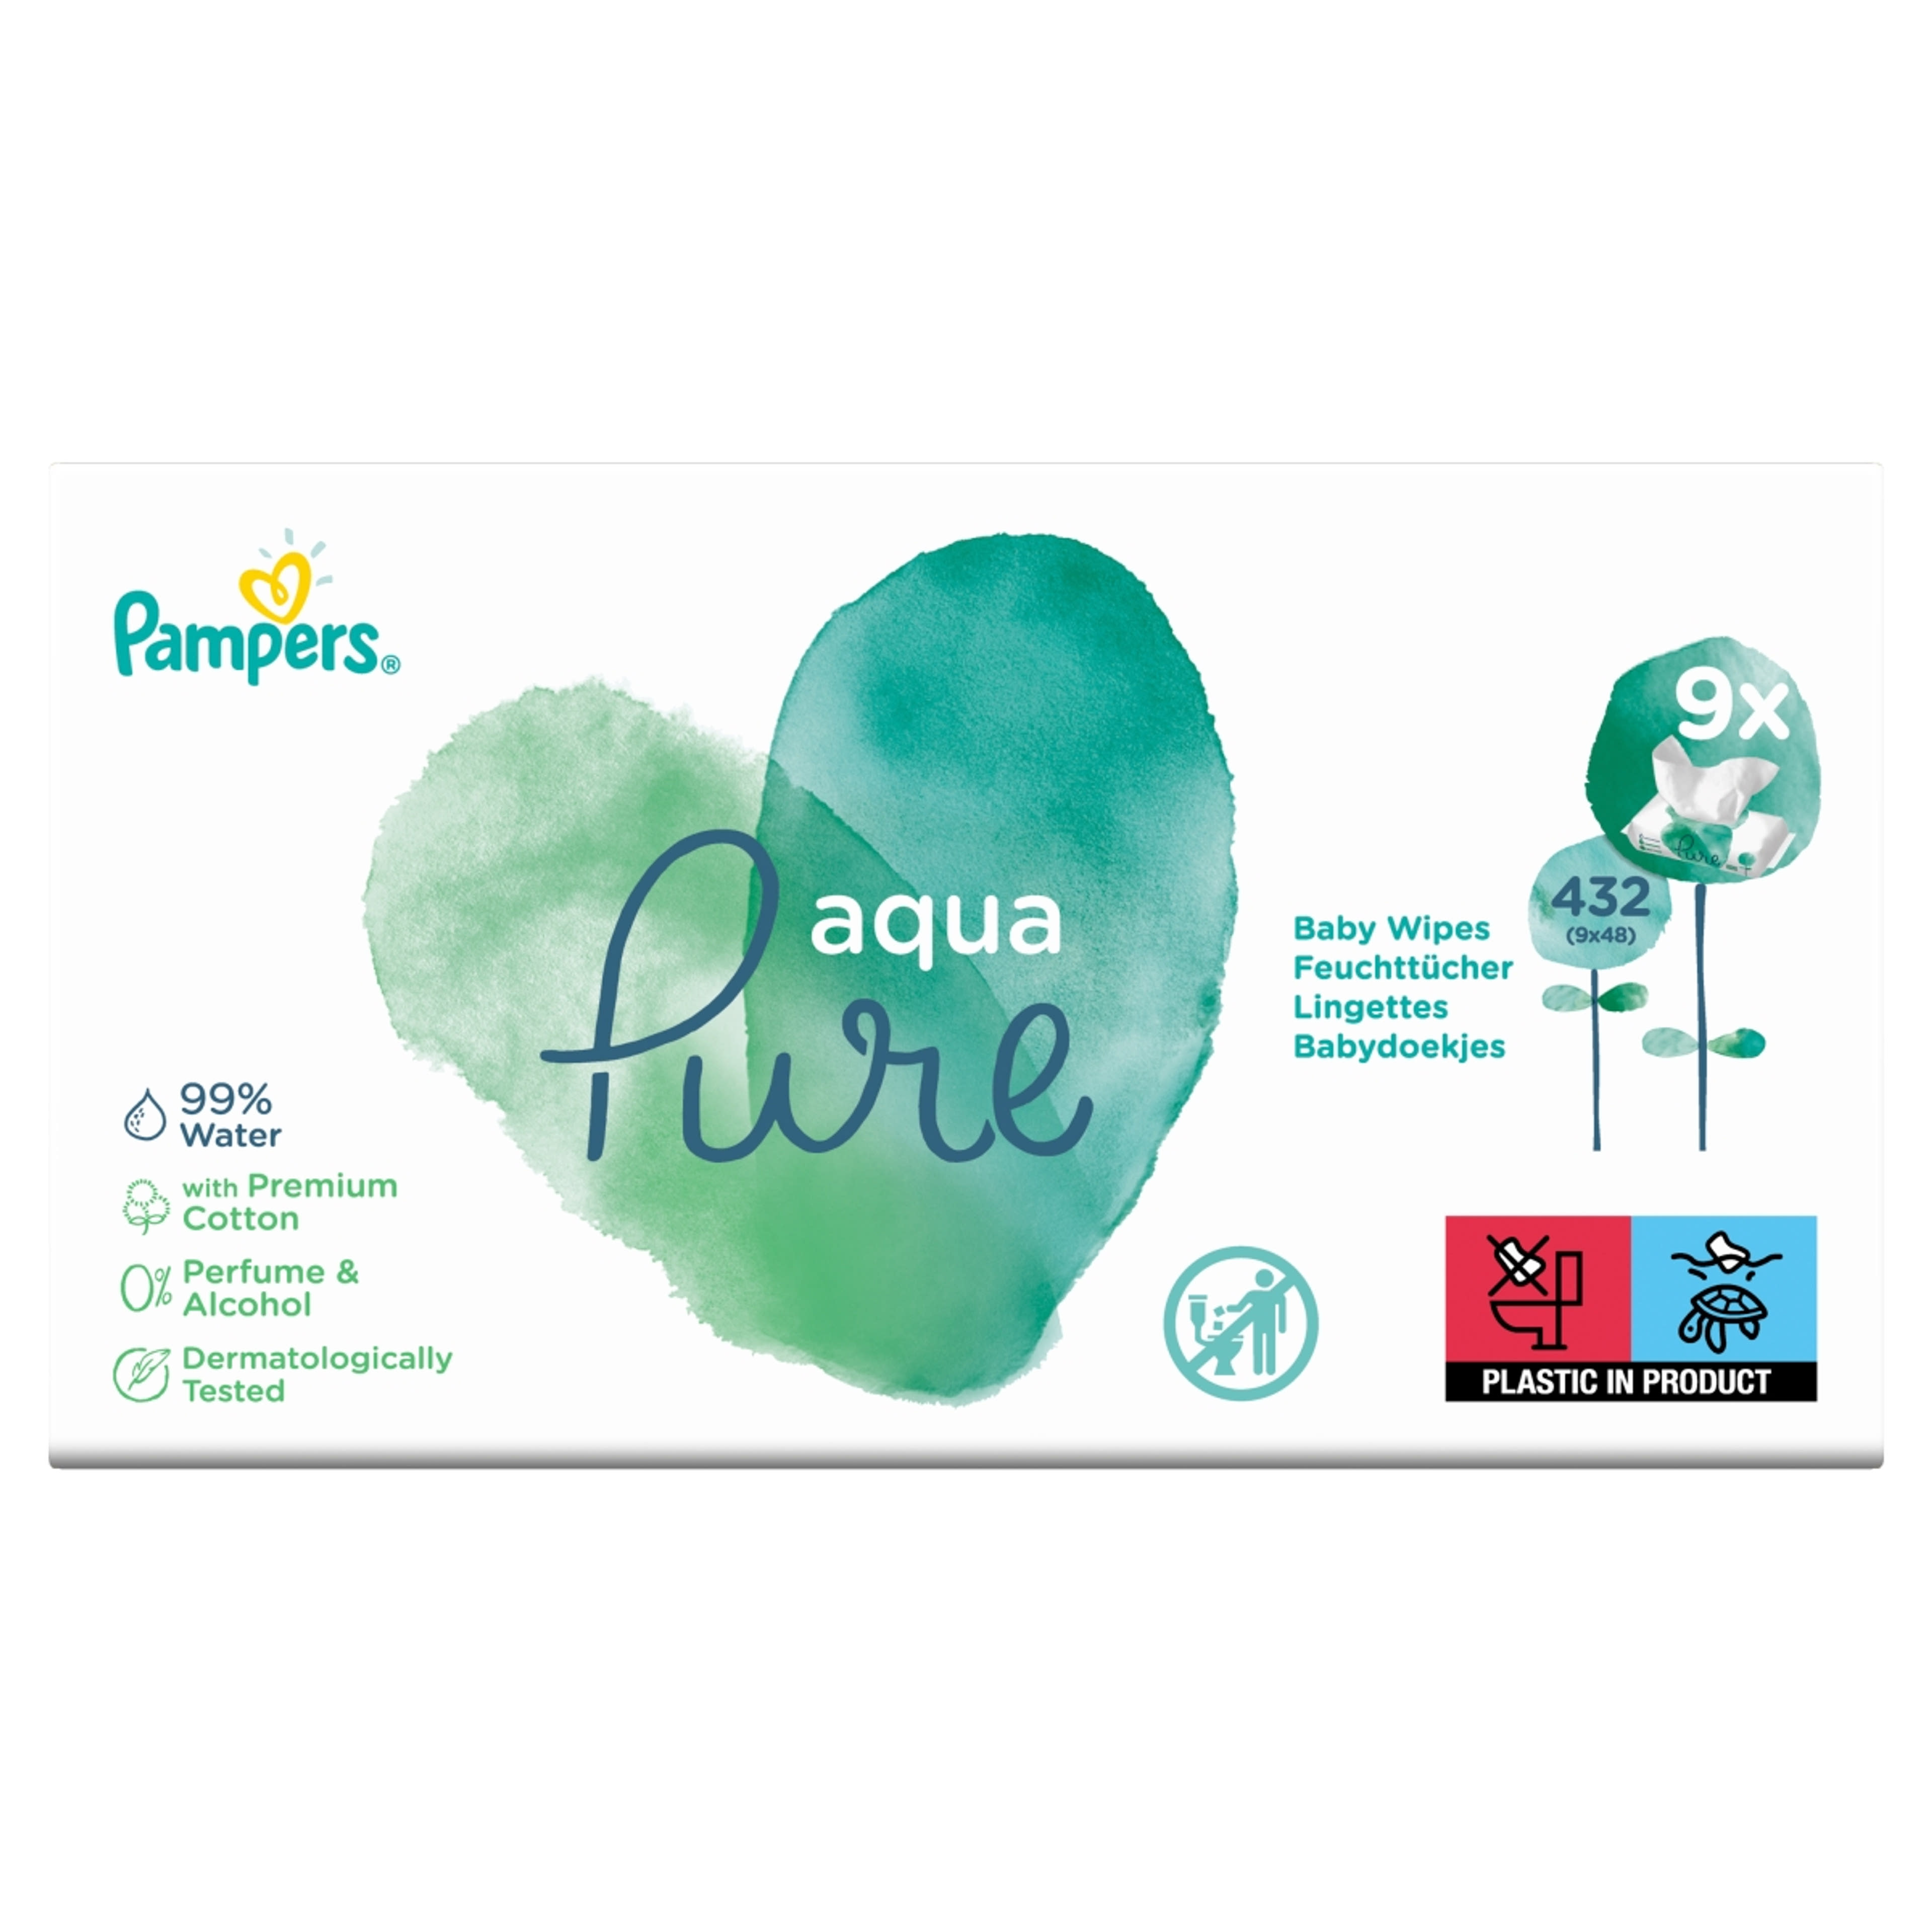 Pampers Aqua Pure törlőkendő (9*48) - 432 db